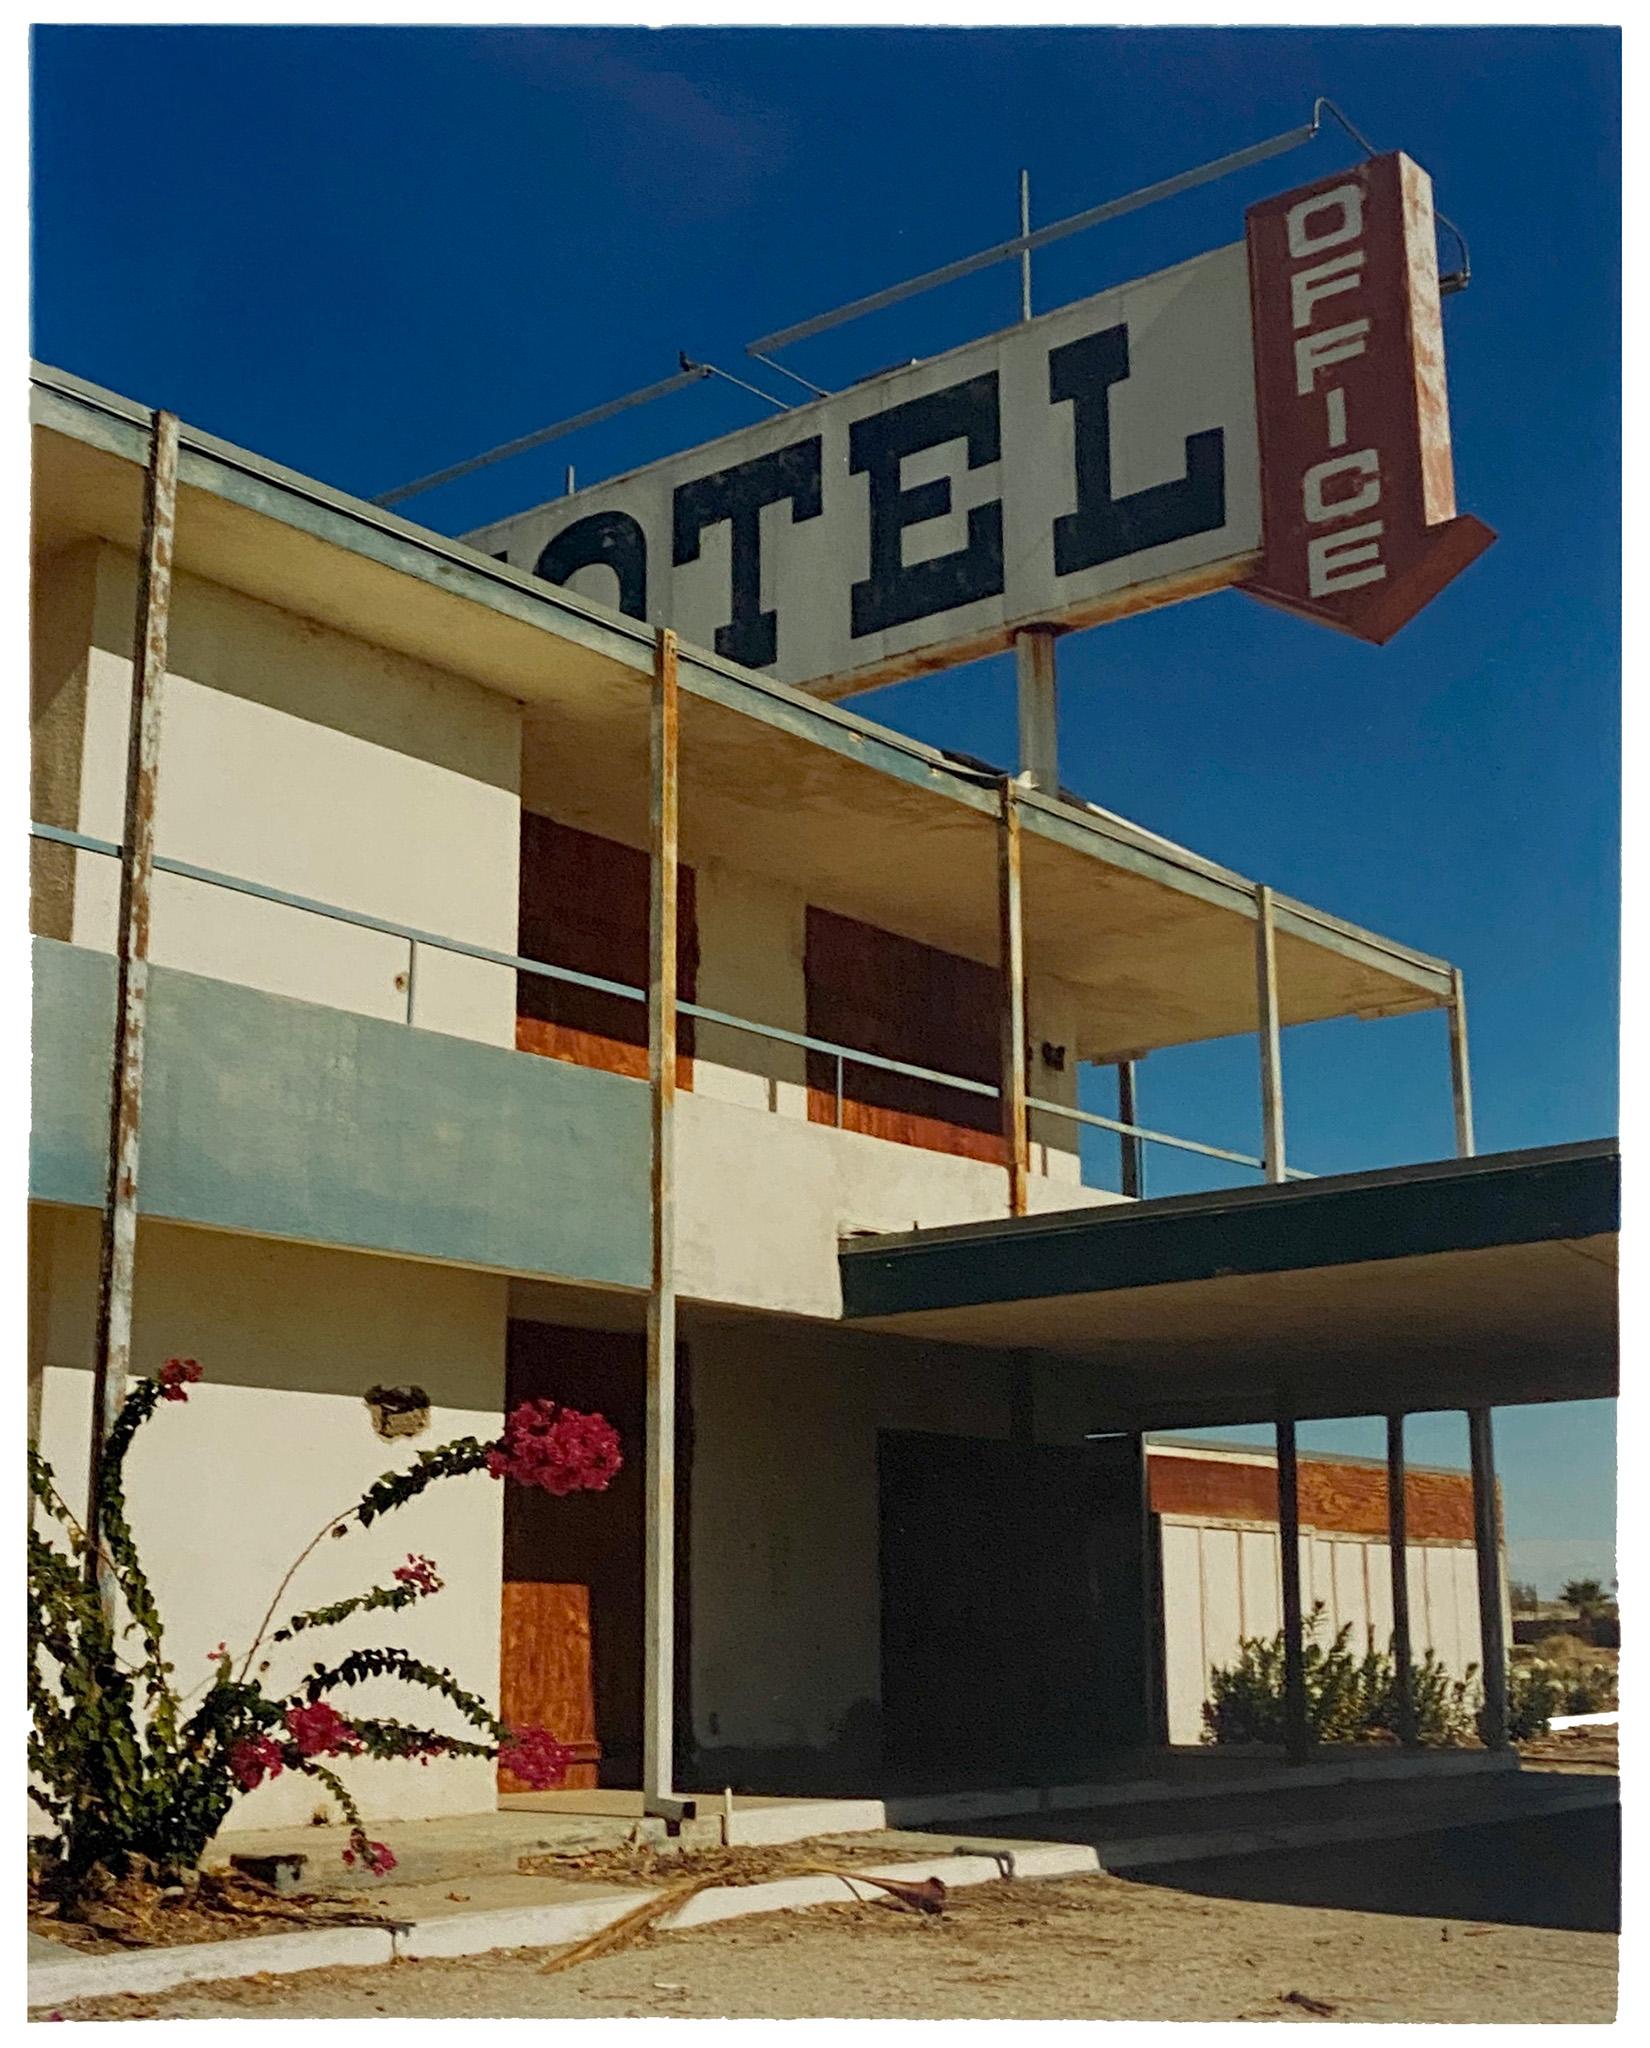 North Shore Motel Office II, Salton Sea, California - Architecture Color Photo